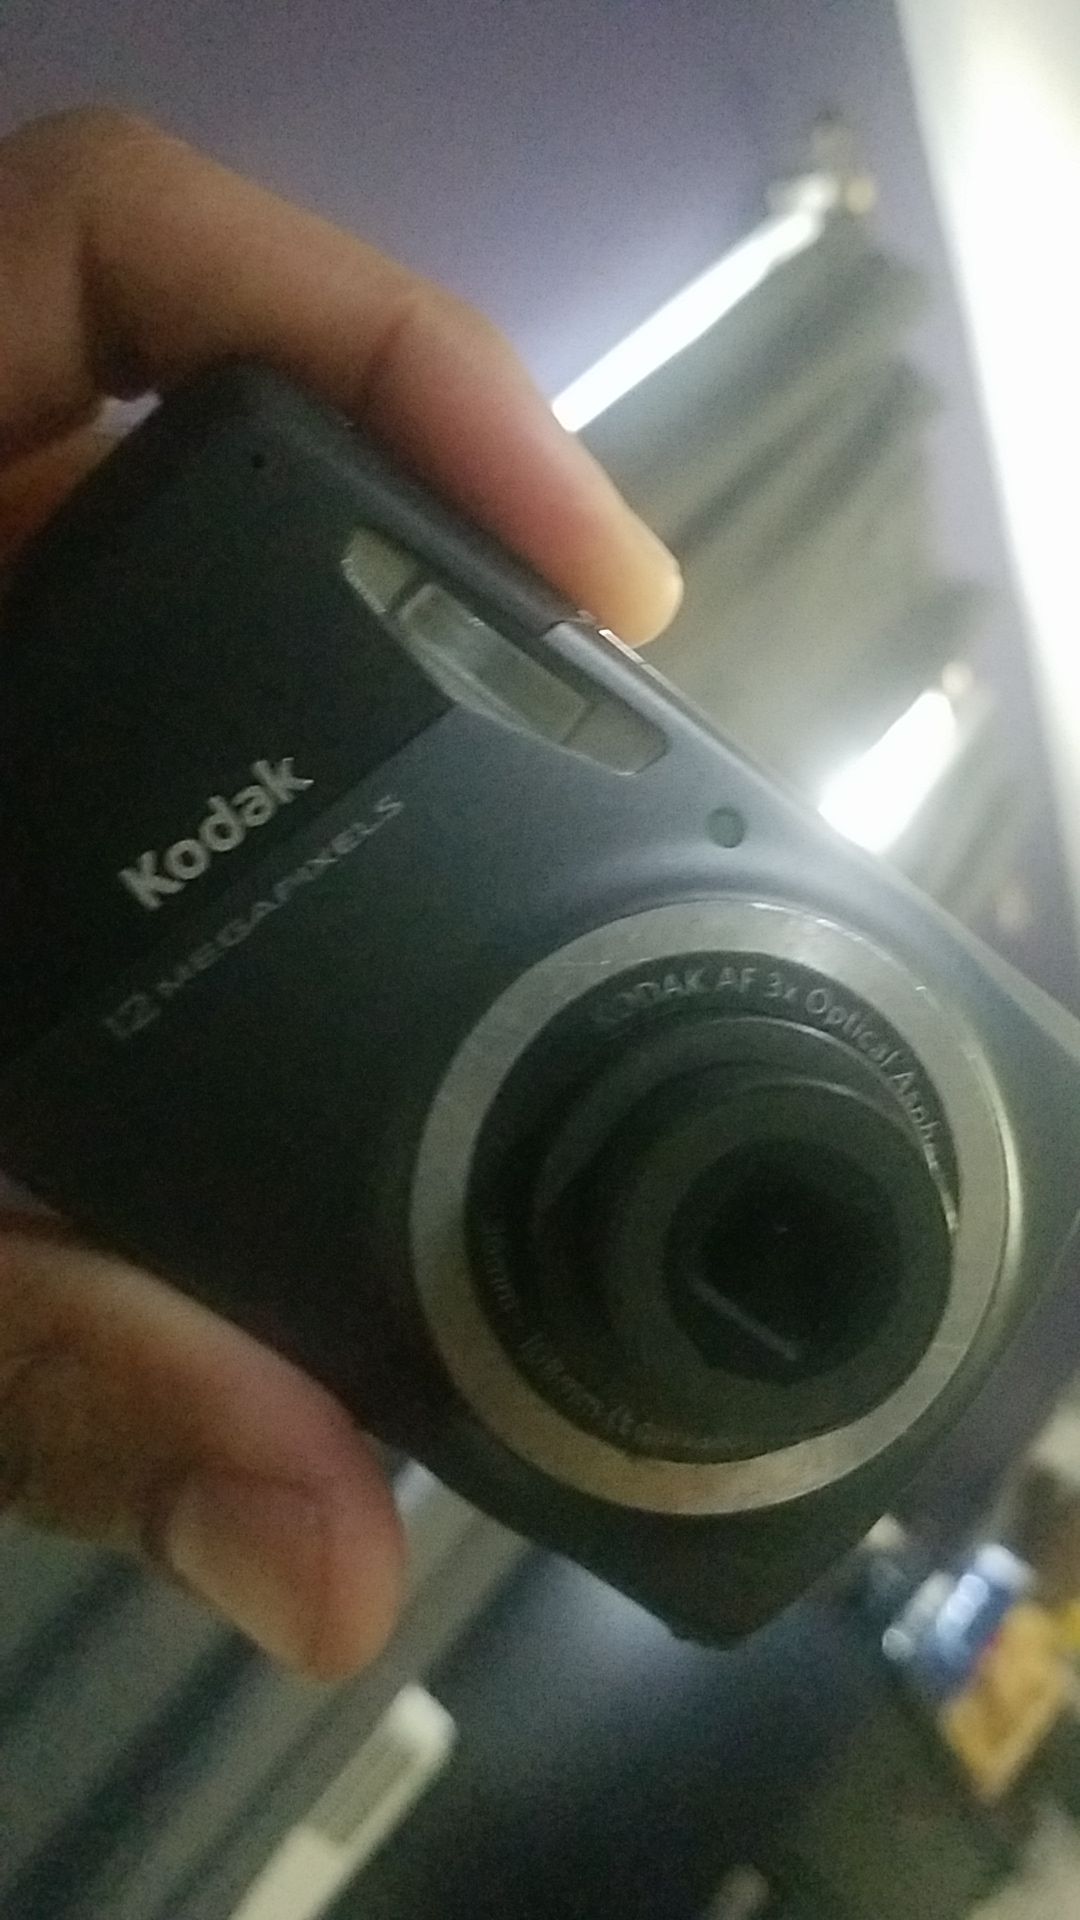 Kodak camara 12 Megapixels